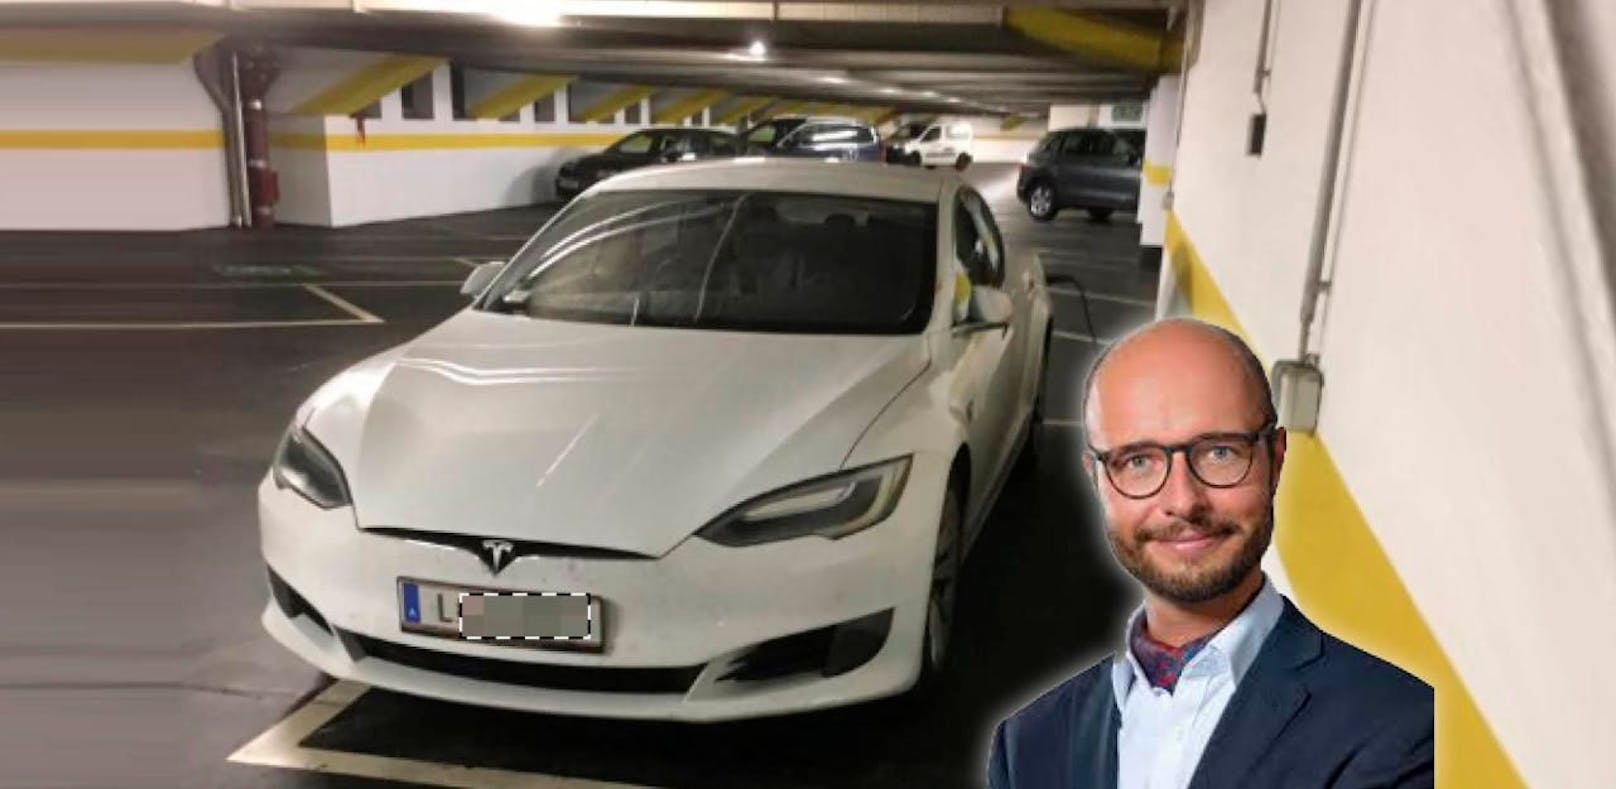 Vize-Bürgermeister Detlef Wimmer (FPÖ) fährt mit seinem privaten Tesla, statt mit dem Dienstauto.